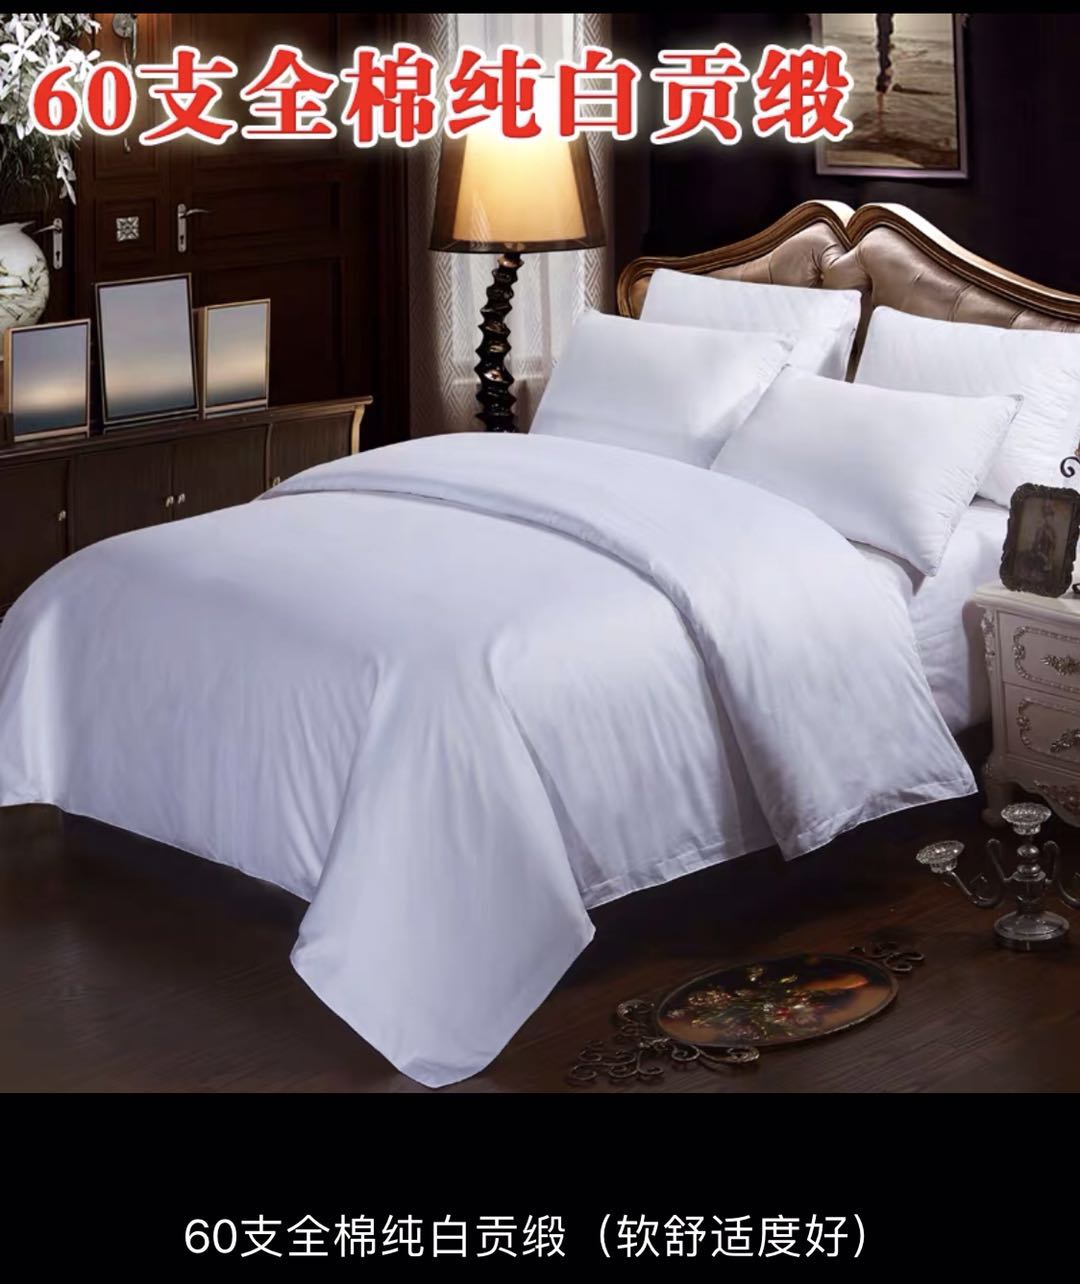 宾馆酒店床上用品批量发缎条纯棉全棉白色加厚纯被套单件定做包邮 - 图2